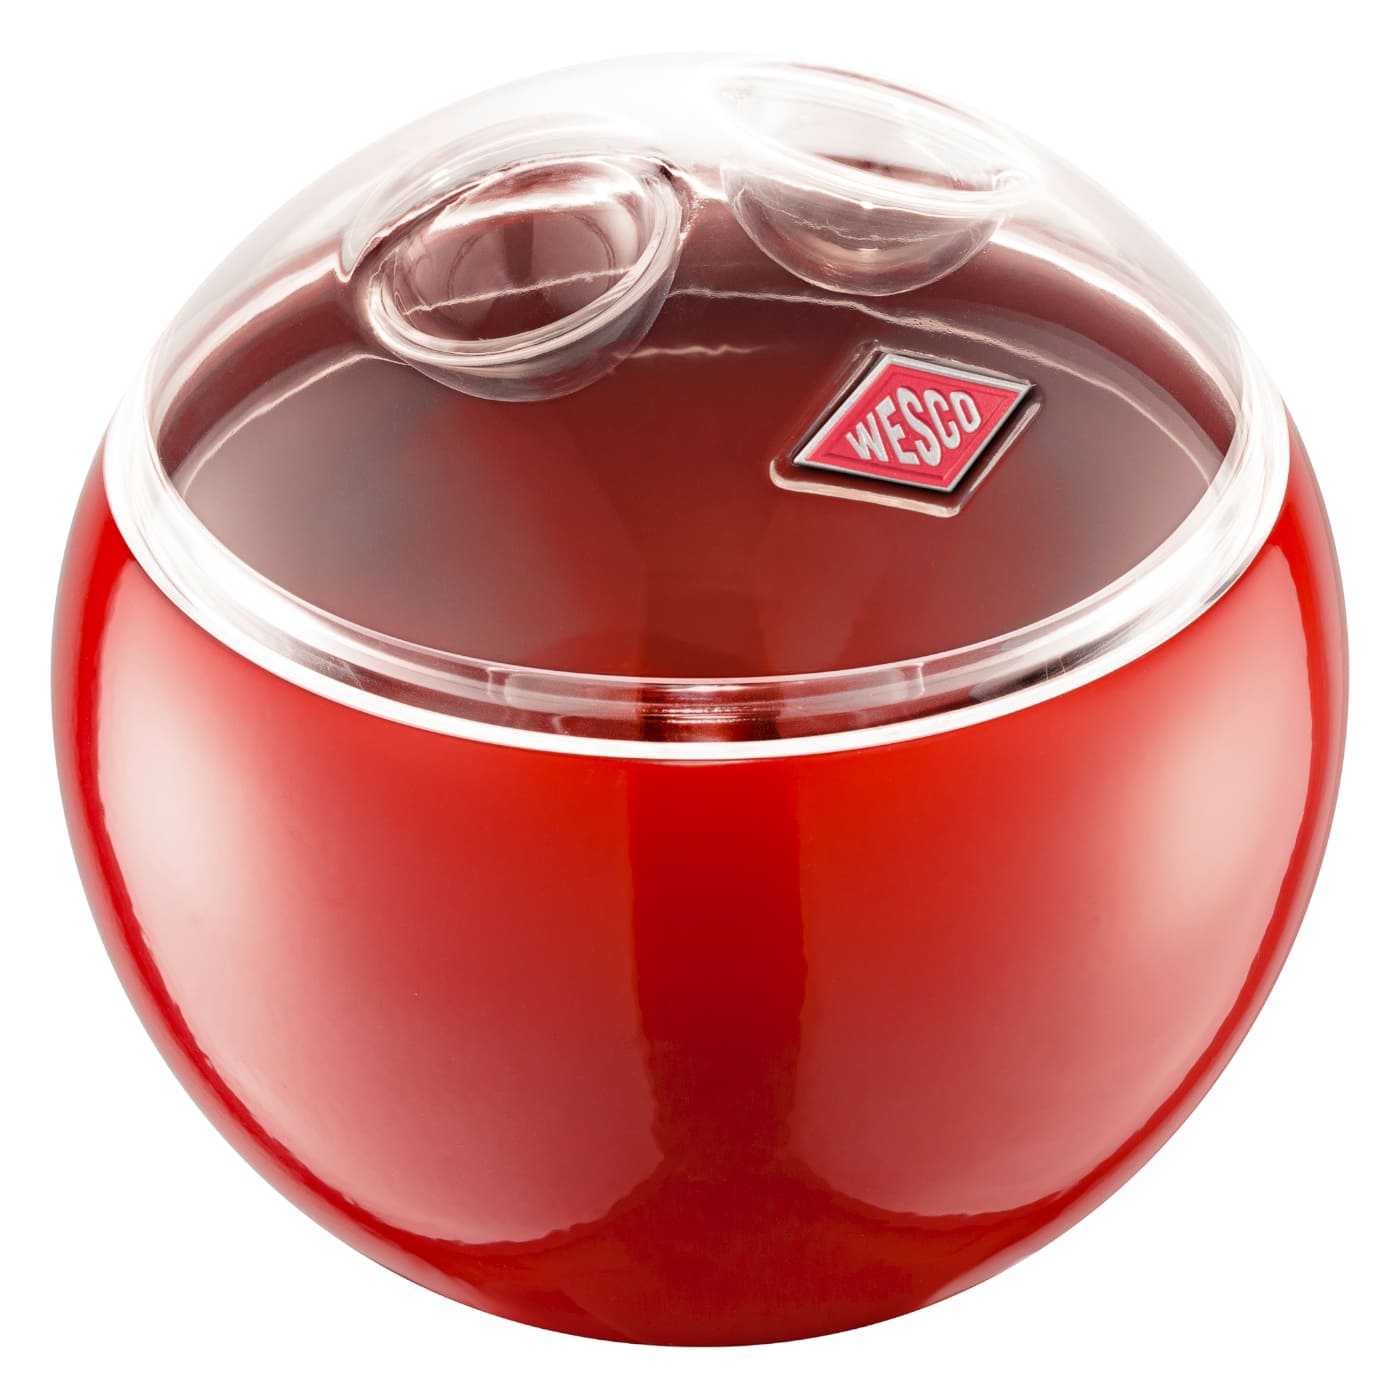 Kugelförmige kleine Vorratsdose mit durchsichtigen Acryldeckel in der Farbe Rot